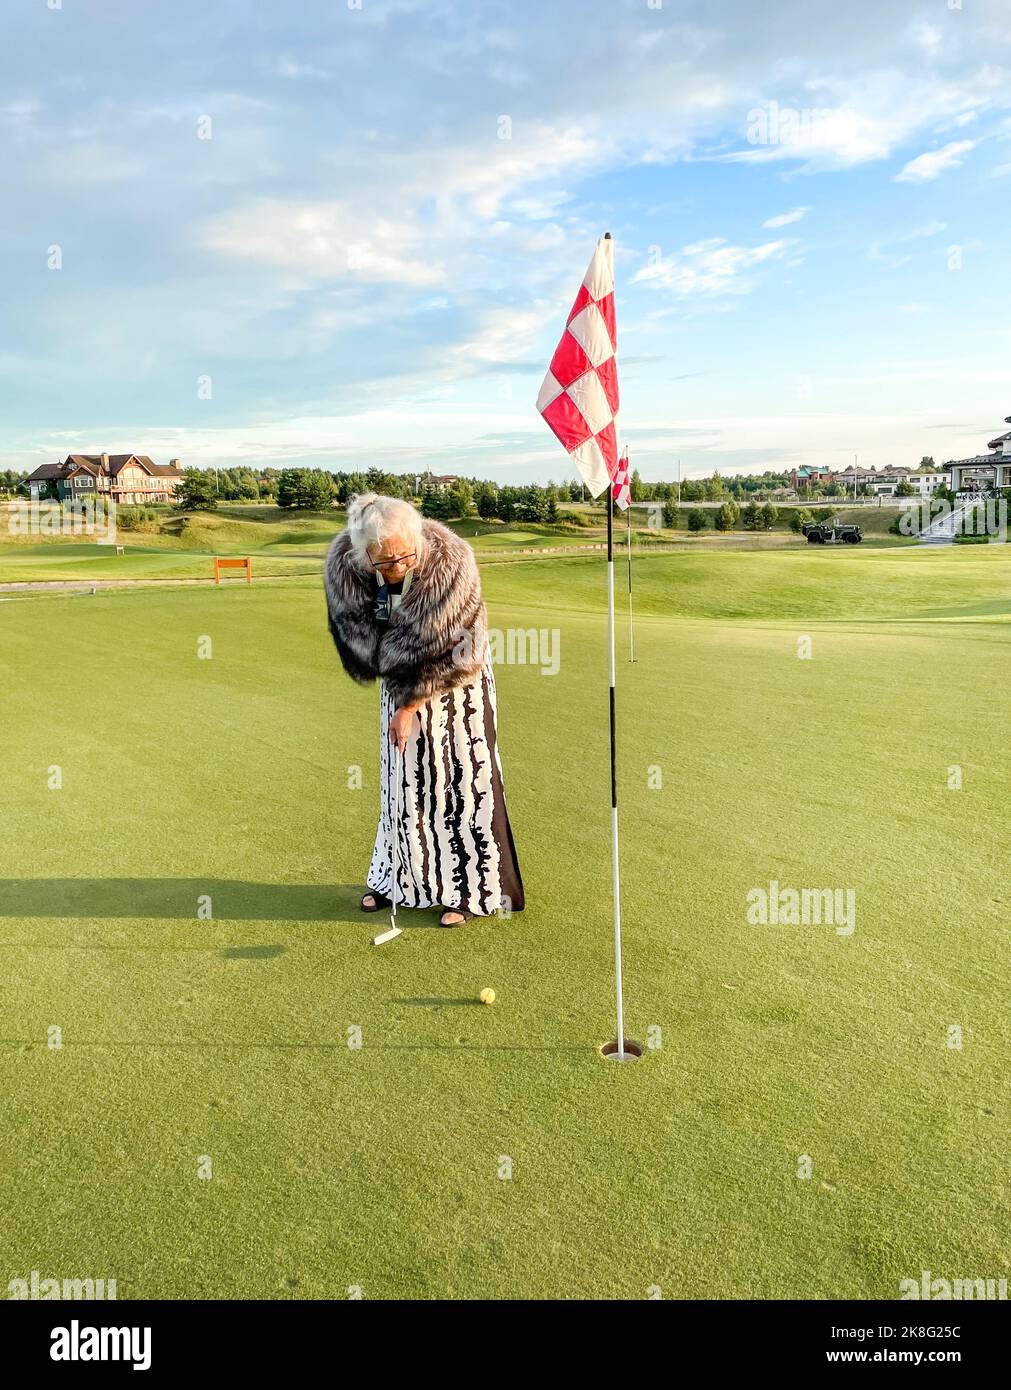 Donna anziana gioca a golf sul campo da golf. Segna la palla nel buco con la bandiera a scacchi rossa e bianca. Foto Stock